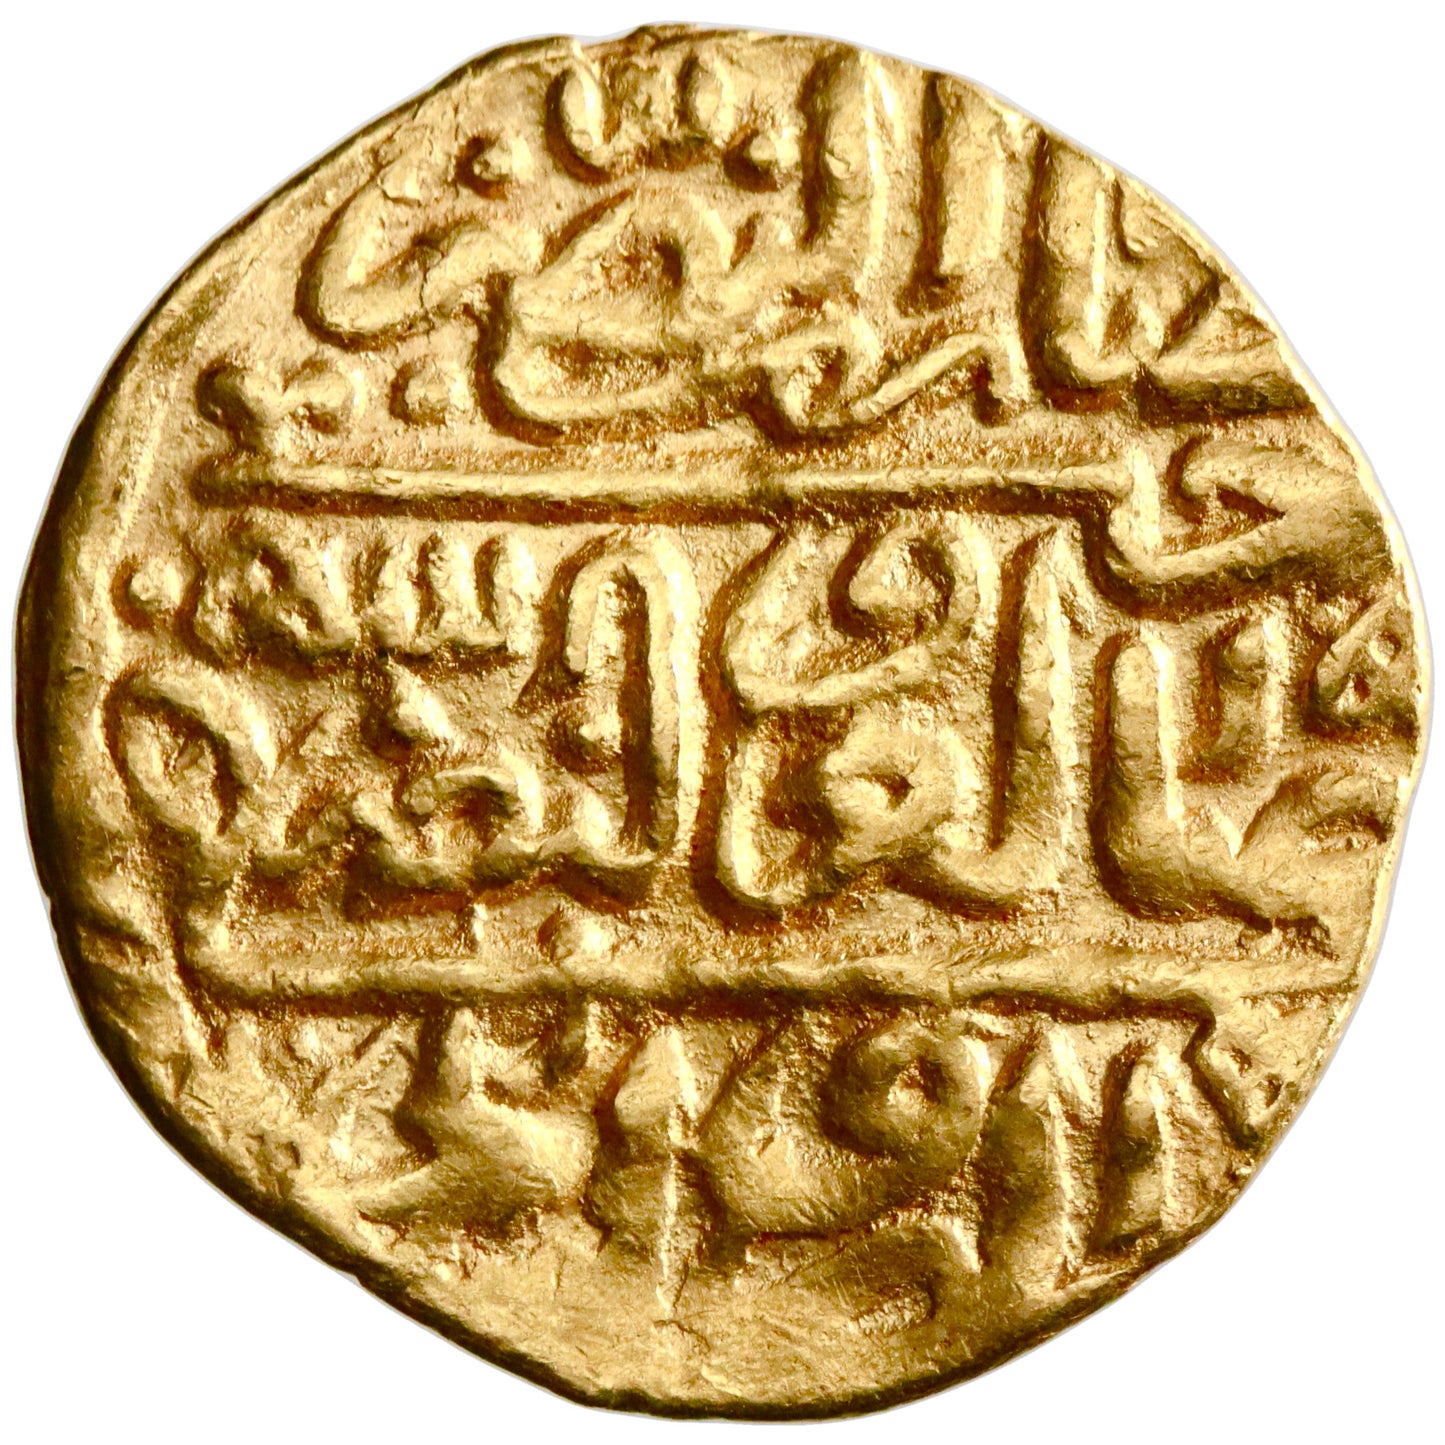 Ottoman, Selim II, gold sultani, Misr (Egypt) mint, AH 974